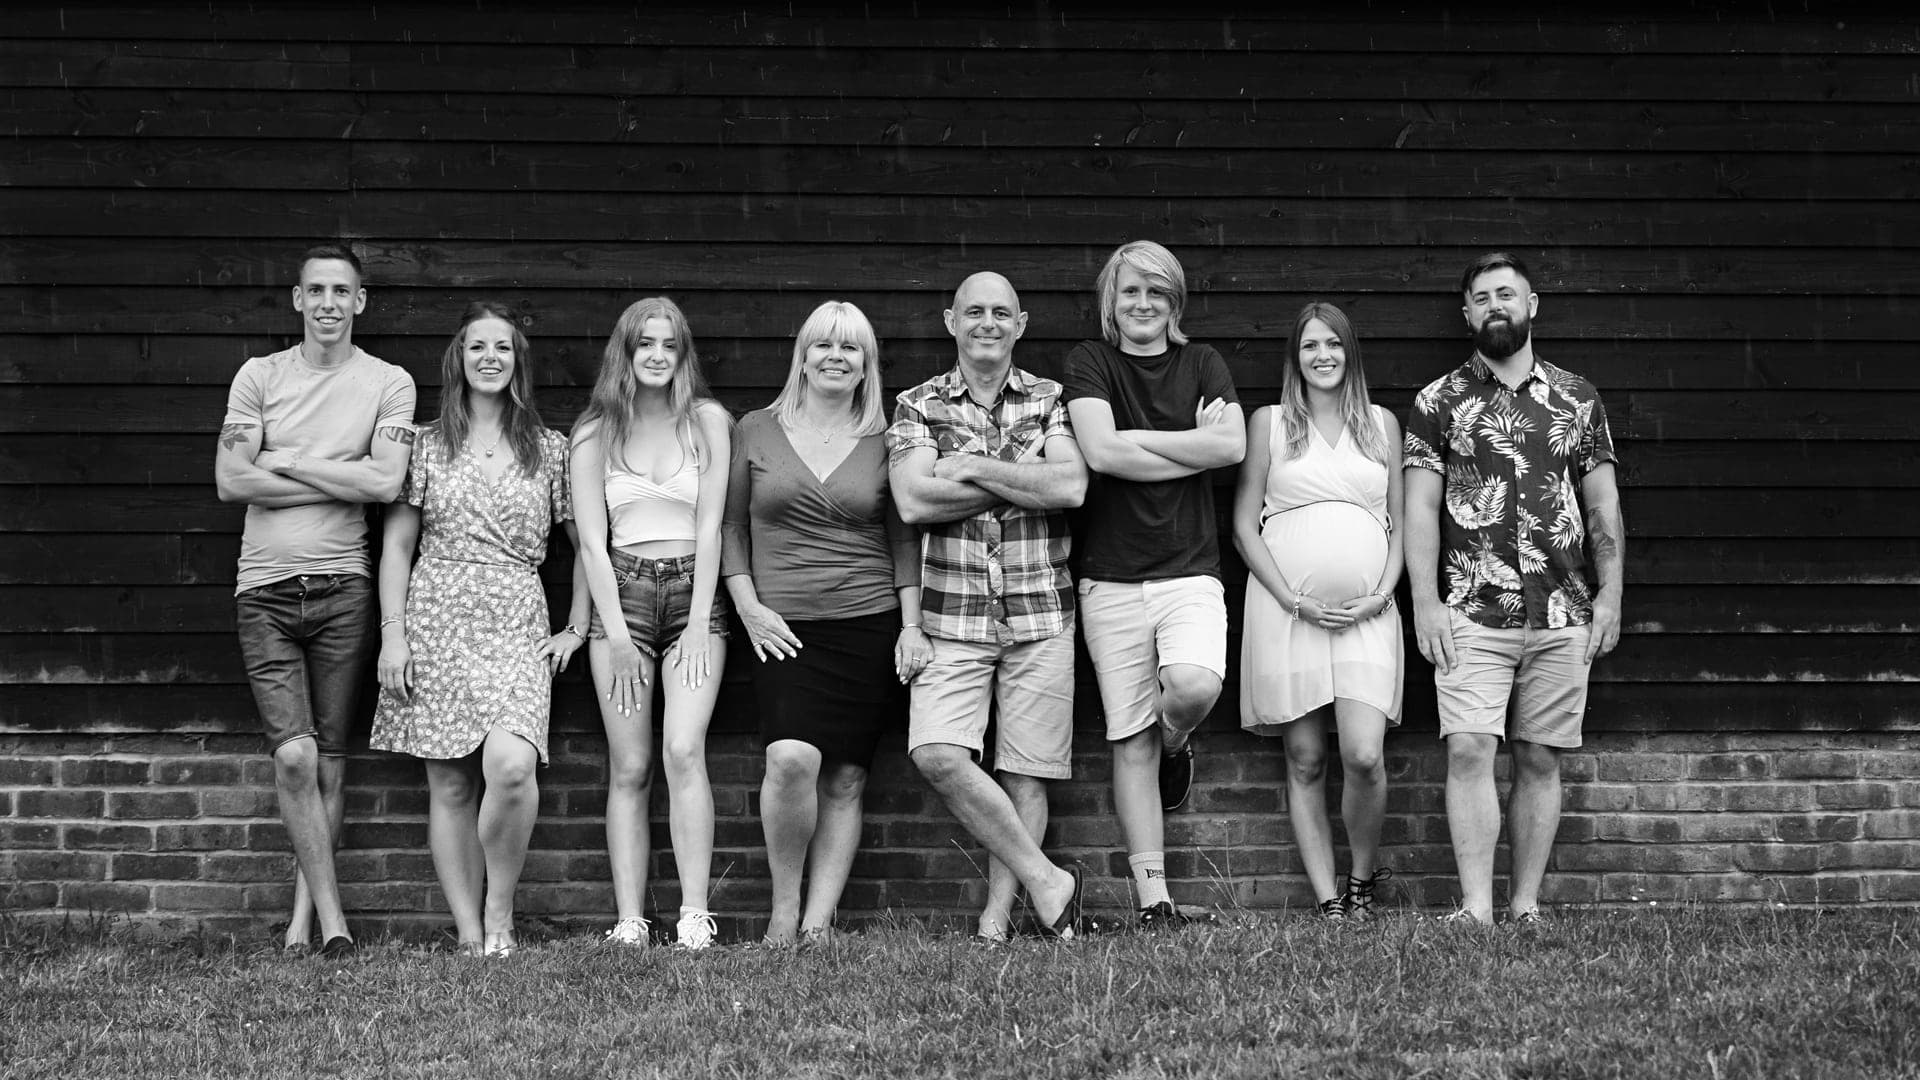 Large family photoshoots